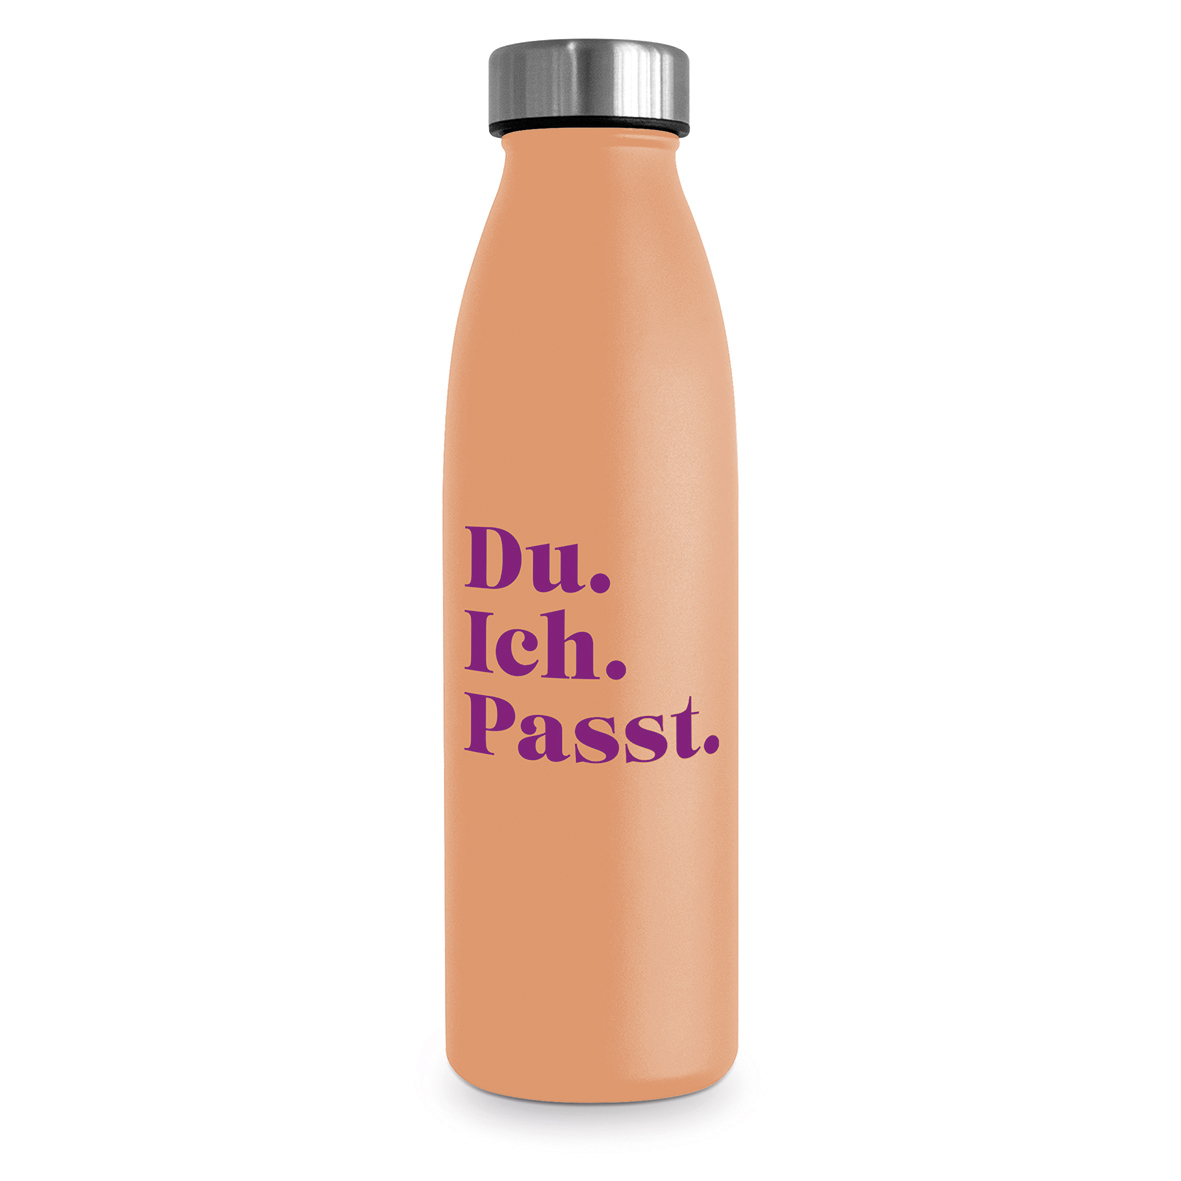 Du. Ich. Passt. Design Bottle 0.5 D@H